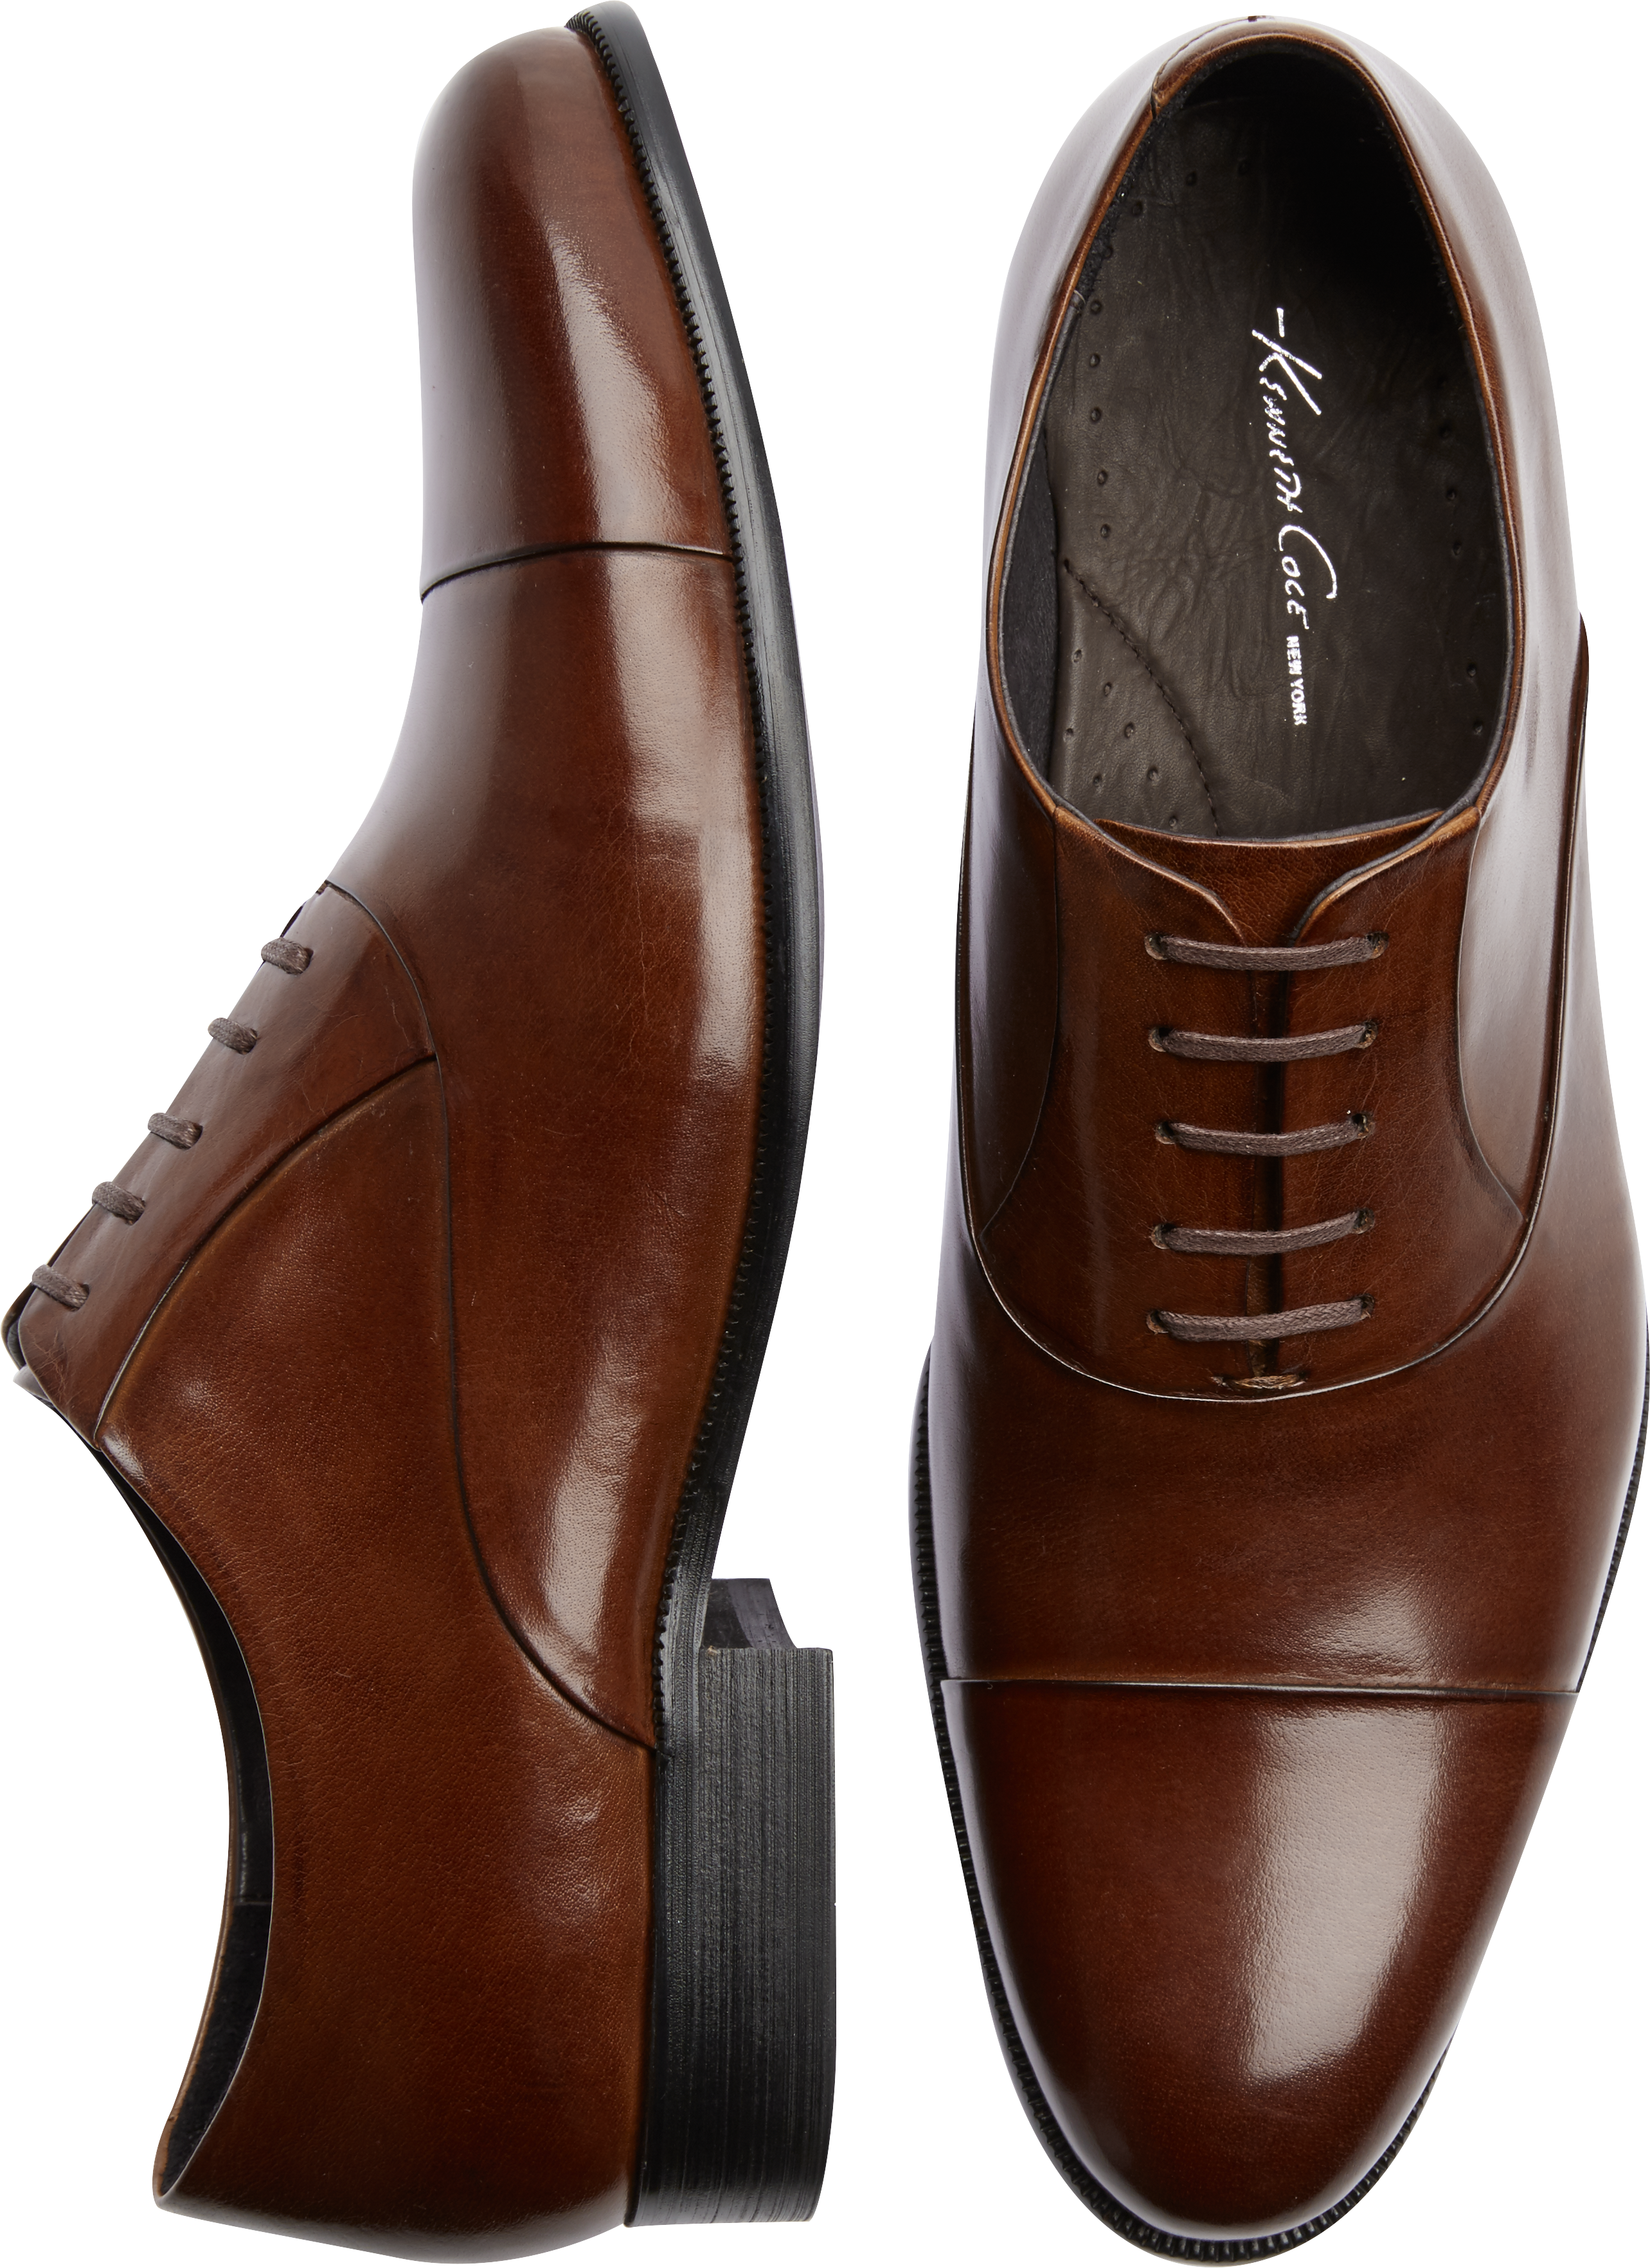 Kenneth Cole Command Chief Cognac Dress Shoe - Men's Dress Shoes | Men ...